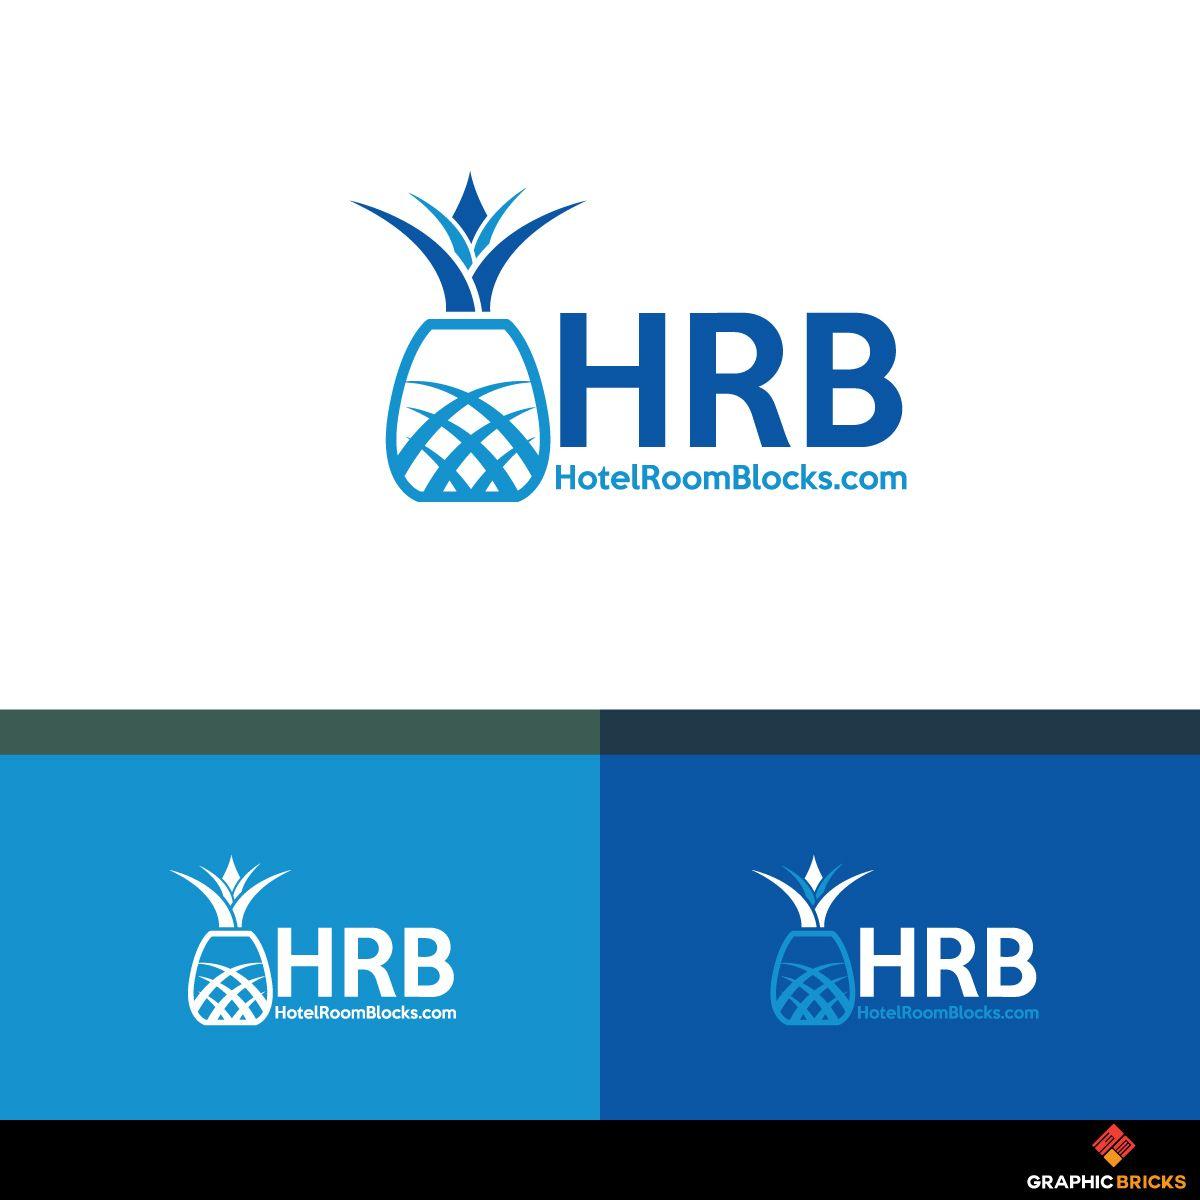 HRB Logo - Modern, Elegant, Travel Industry Logo Design for HRB HotelRoomBlocks